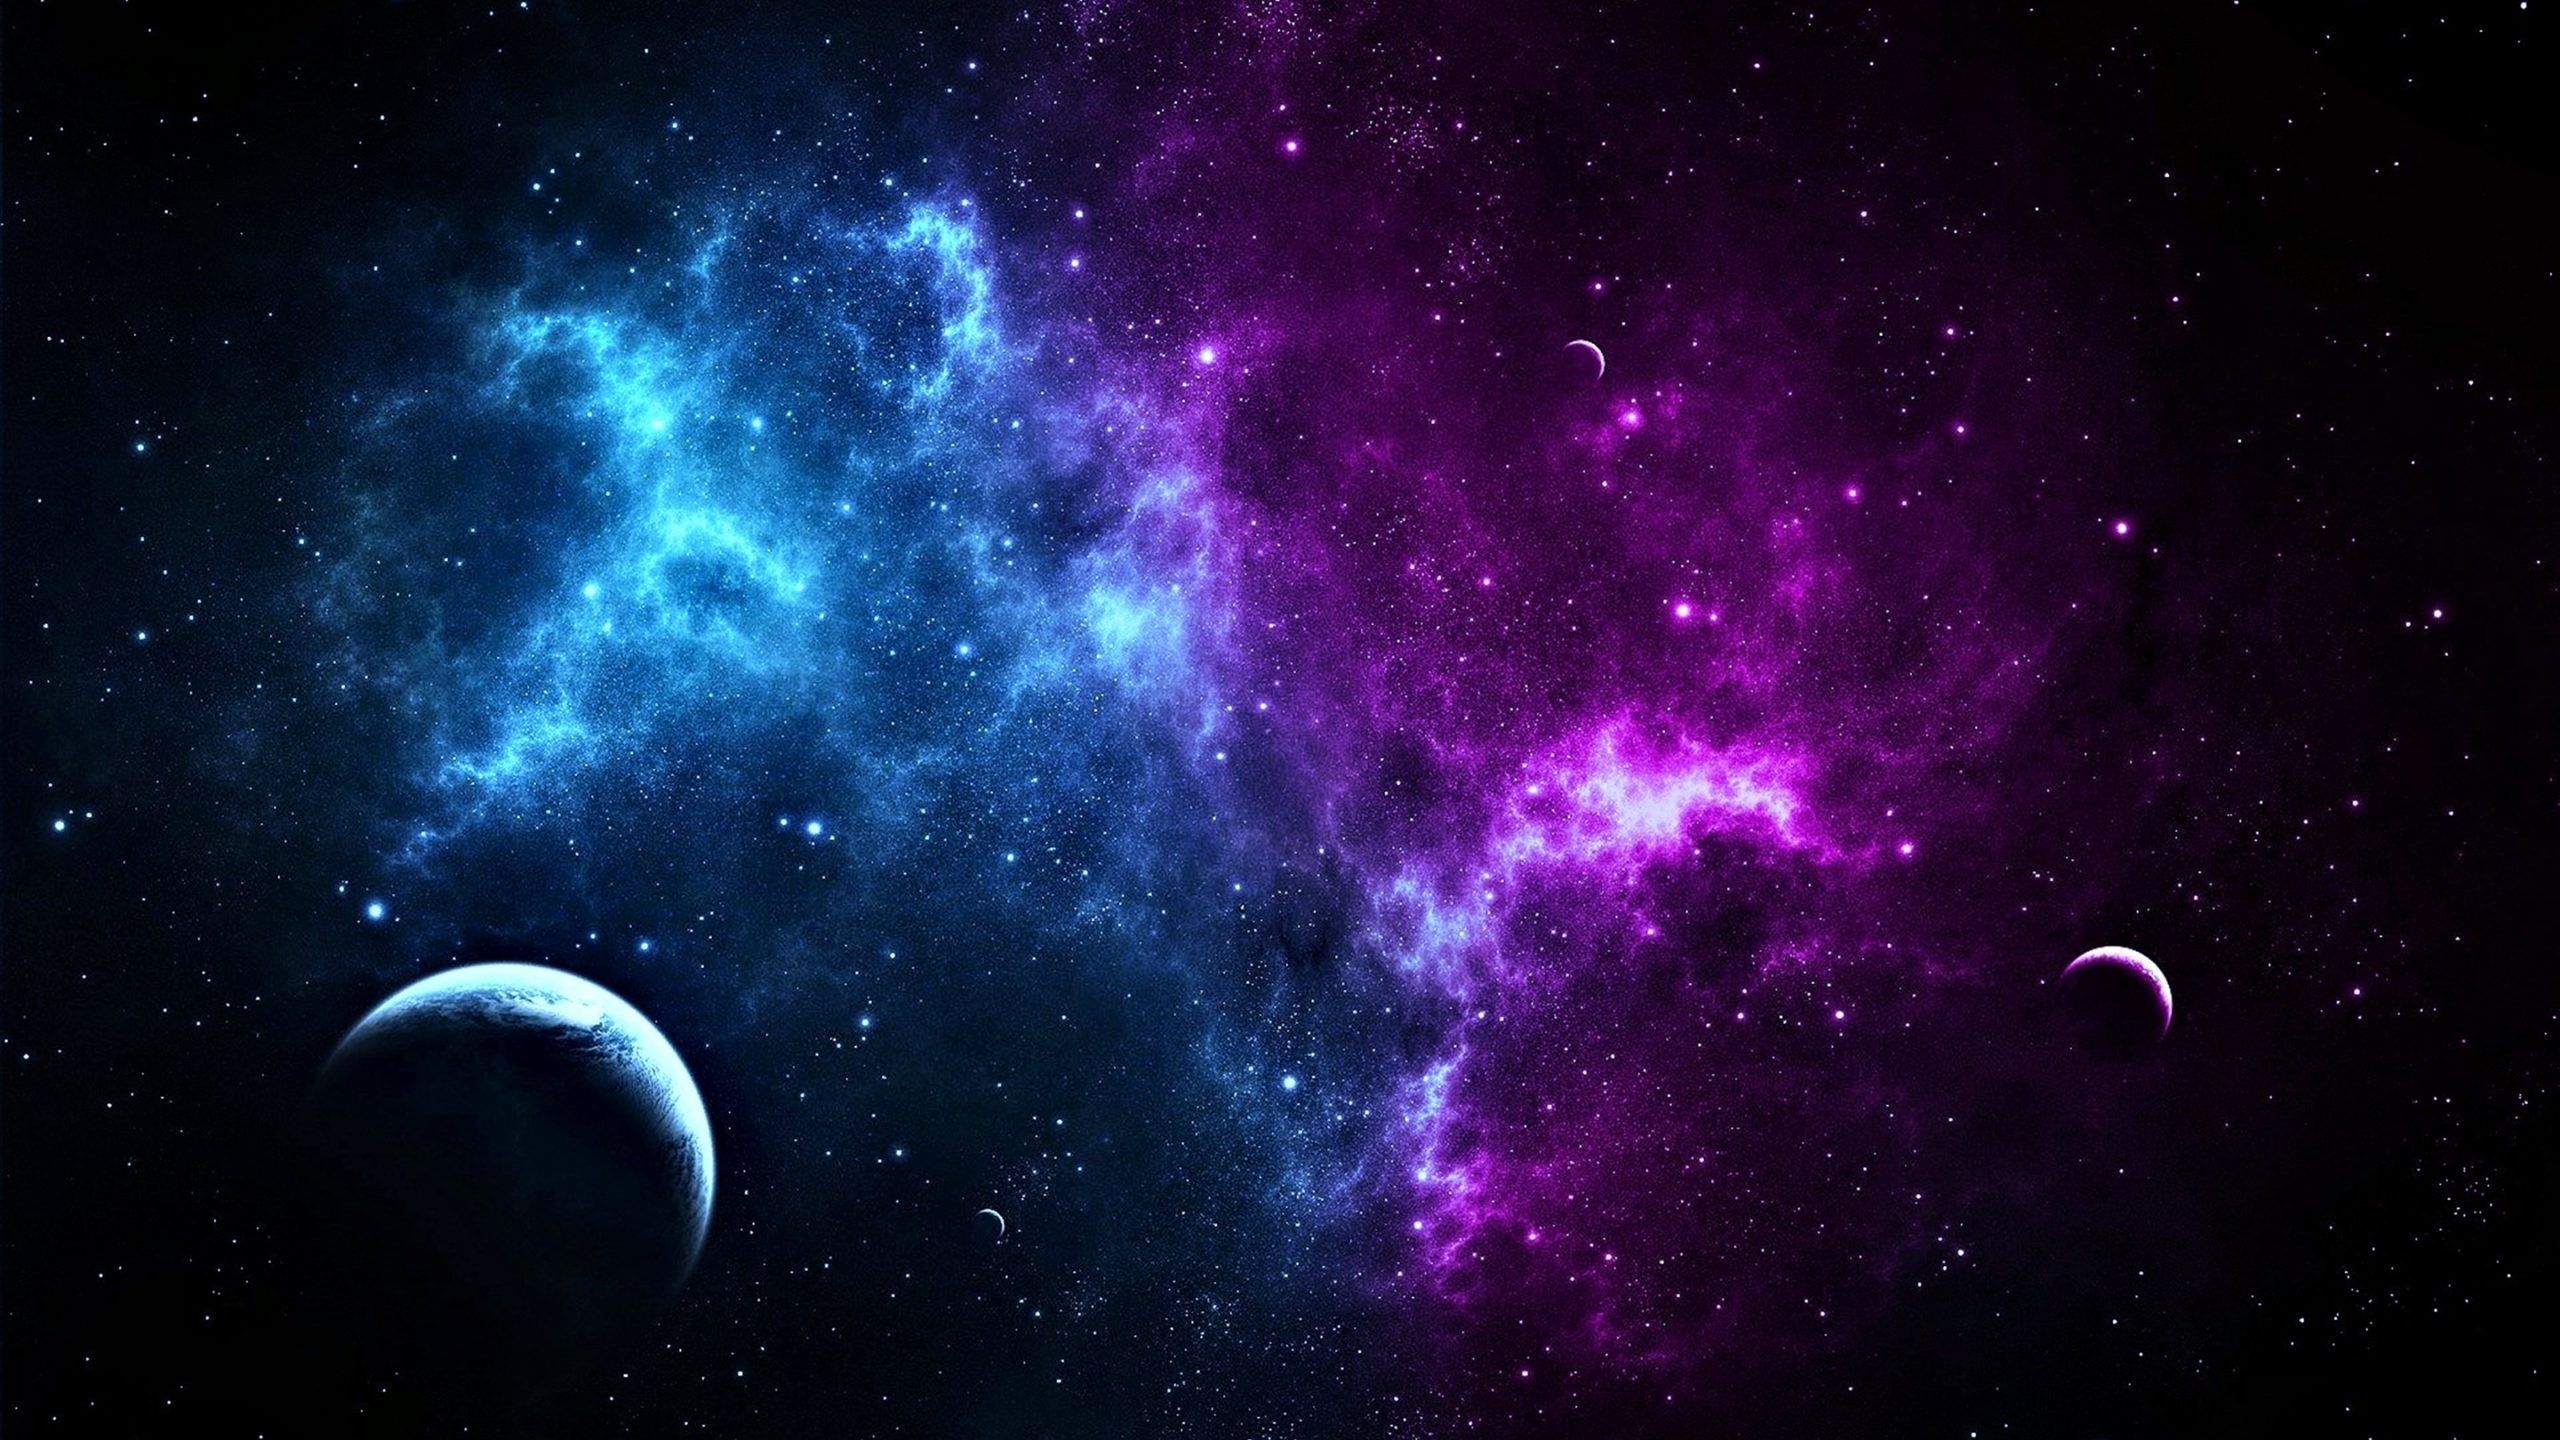 Hãy chọn một hình nền với tông màu tím tuyệt đẹp cho chiếc điện thoại của bạn. Với những hình ảnh nền vũ trụ tím tuyệt đẹp của chúng tôi, bạn sẽ được tận hưởng một không gian sao đầy thú vị và hoàn toàn mới lạ.